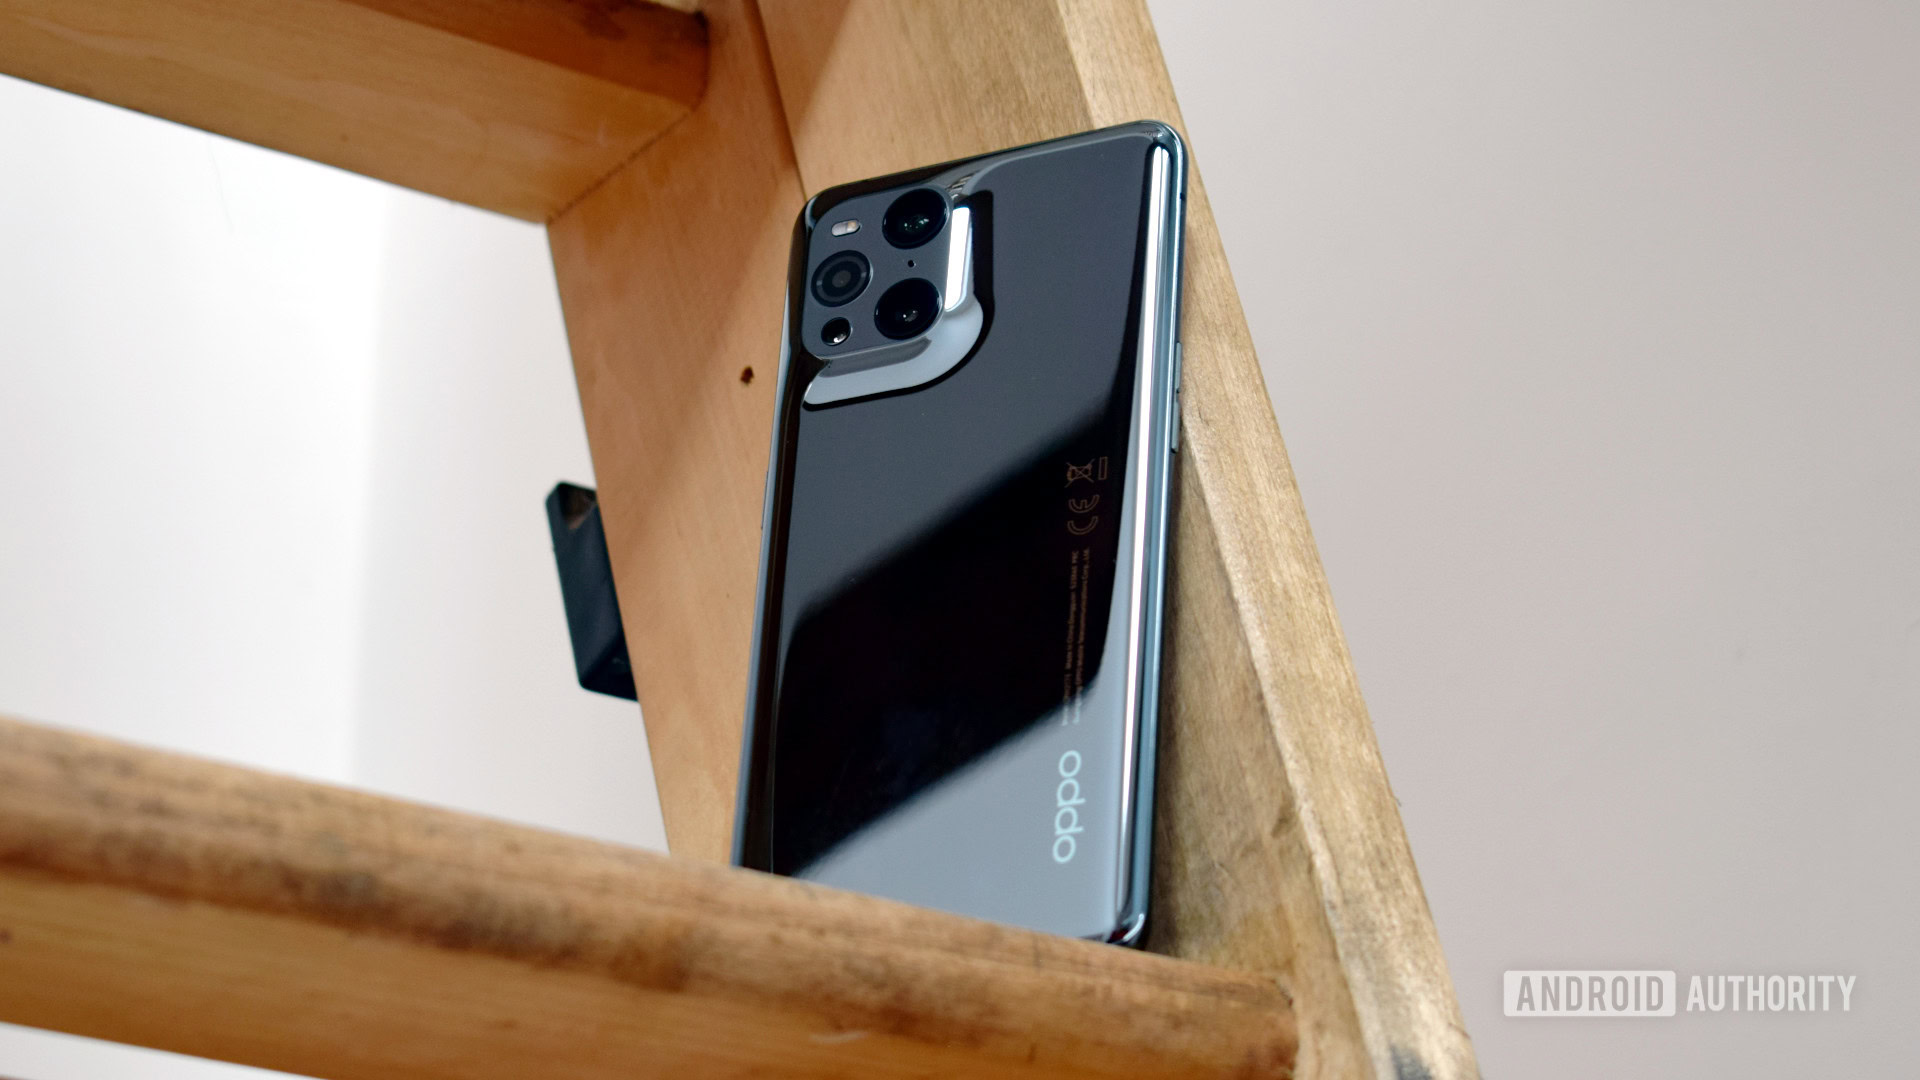 Oppo Find X3 Pro derrière le téléphone dans les escaliers